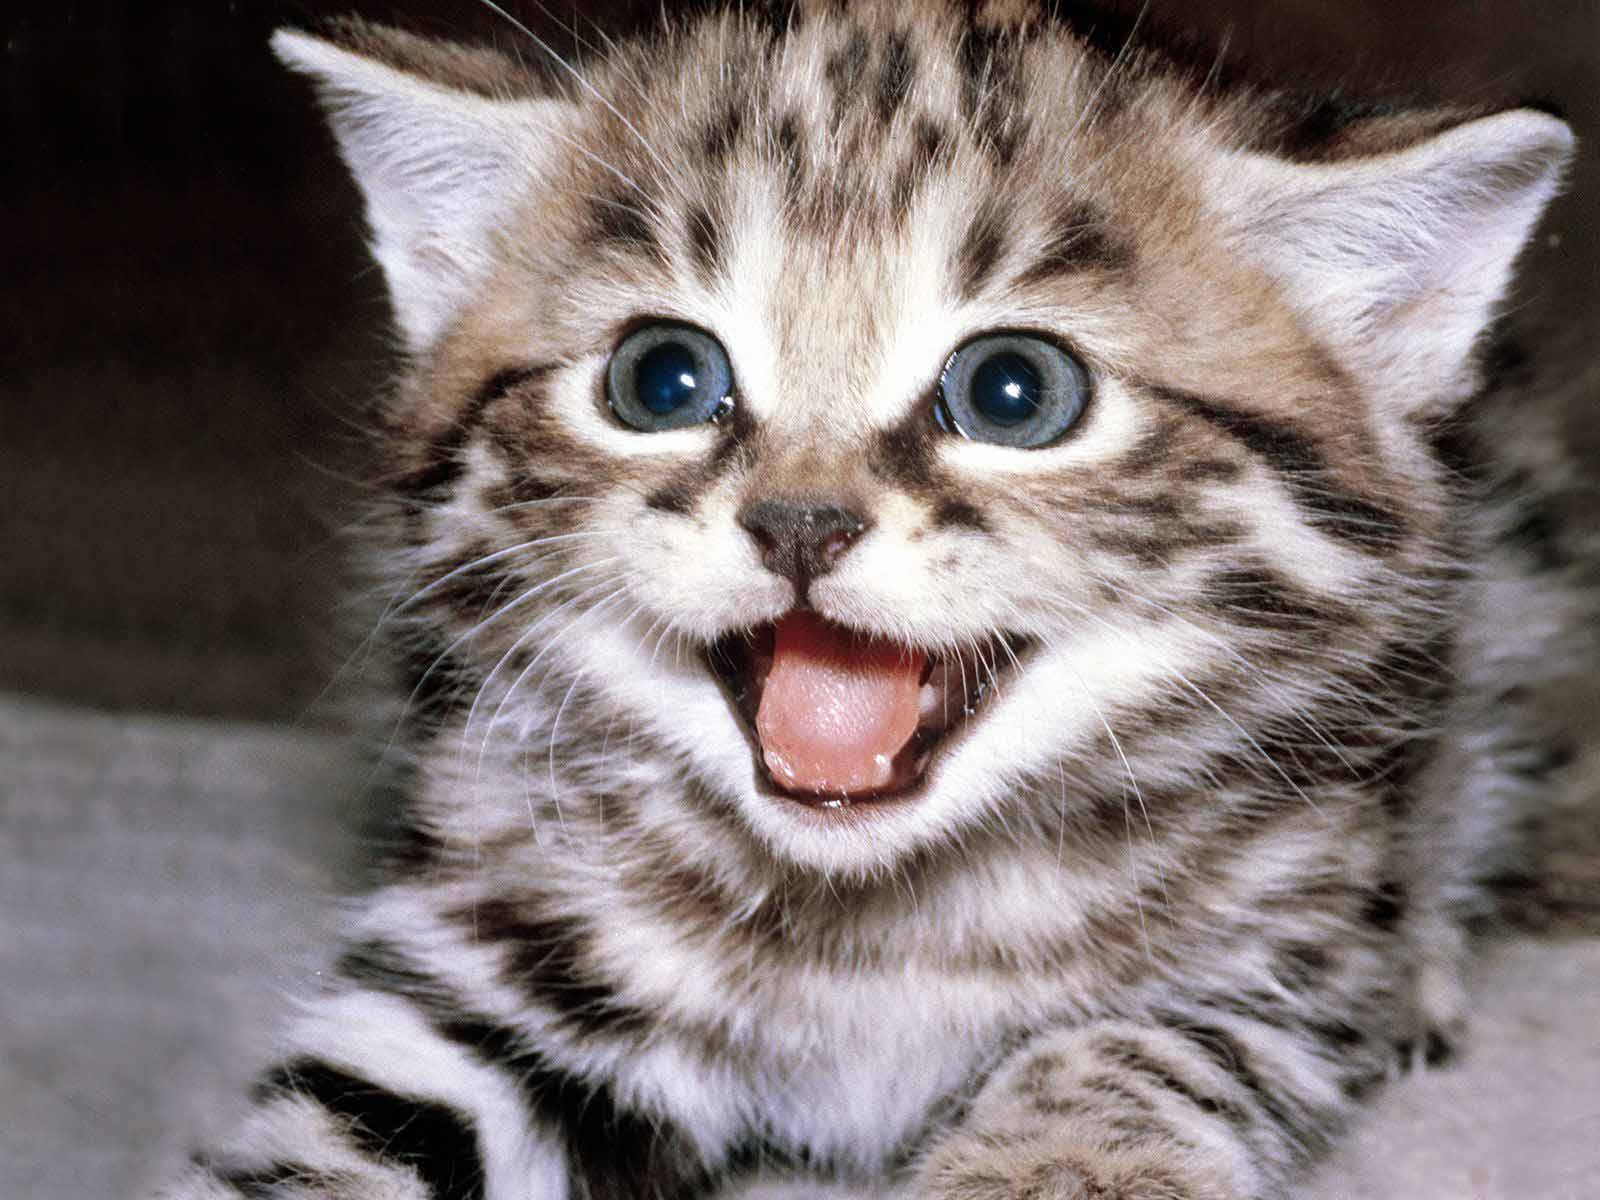 foto hewan - gambar kucing yg lucu